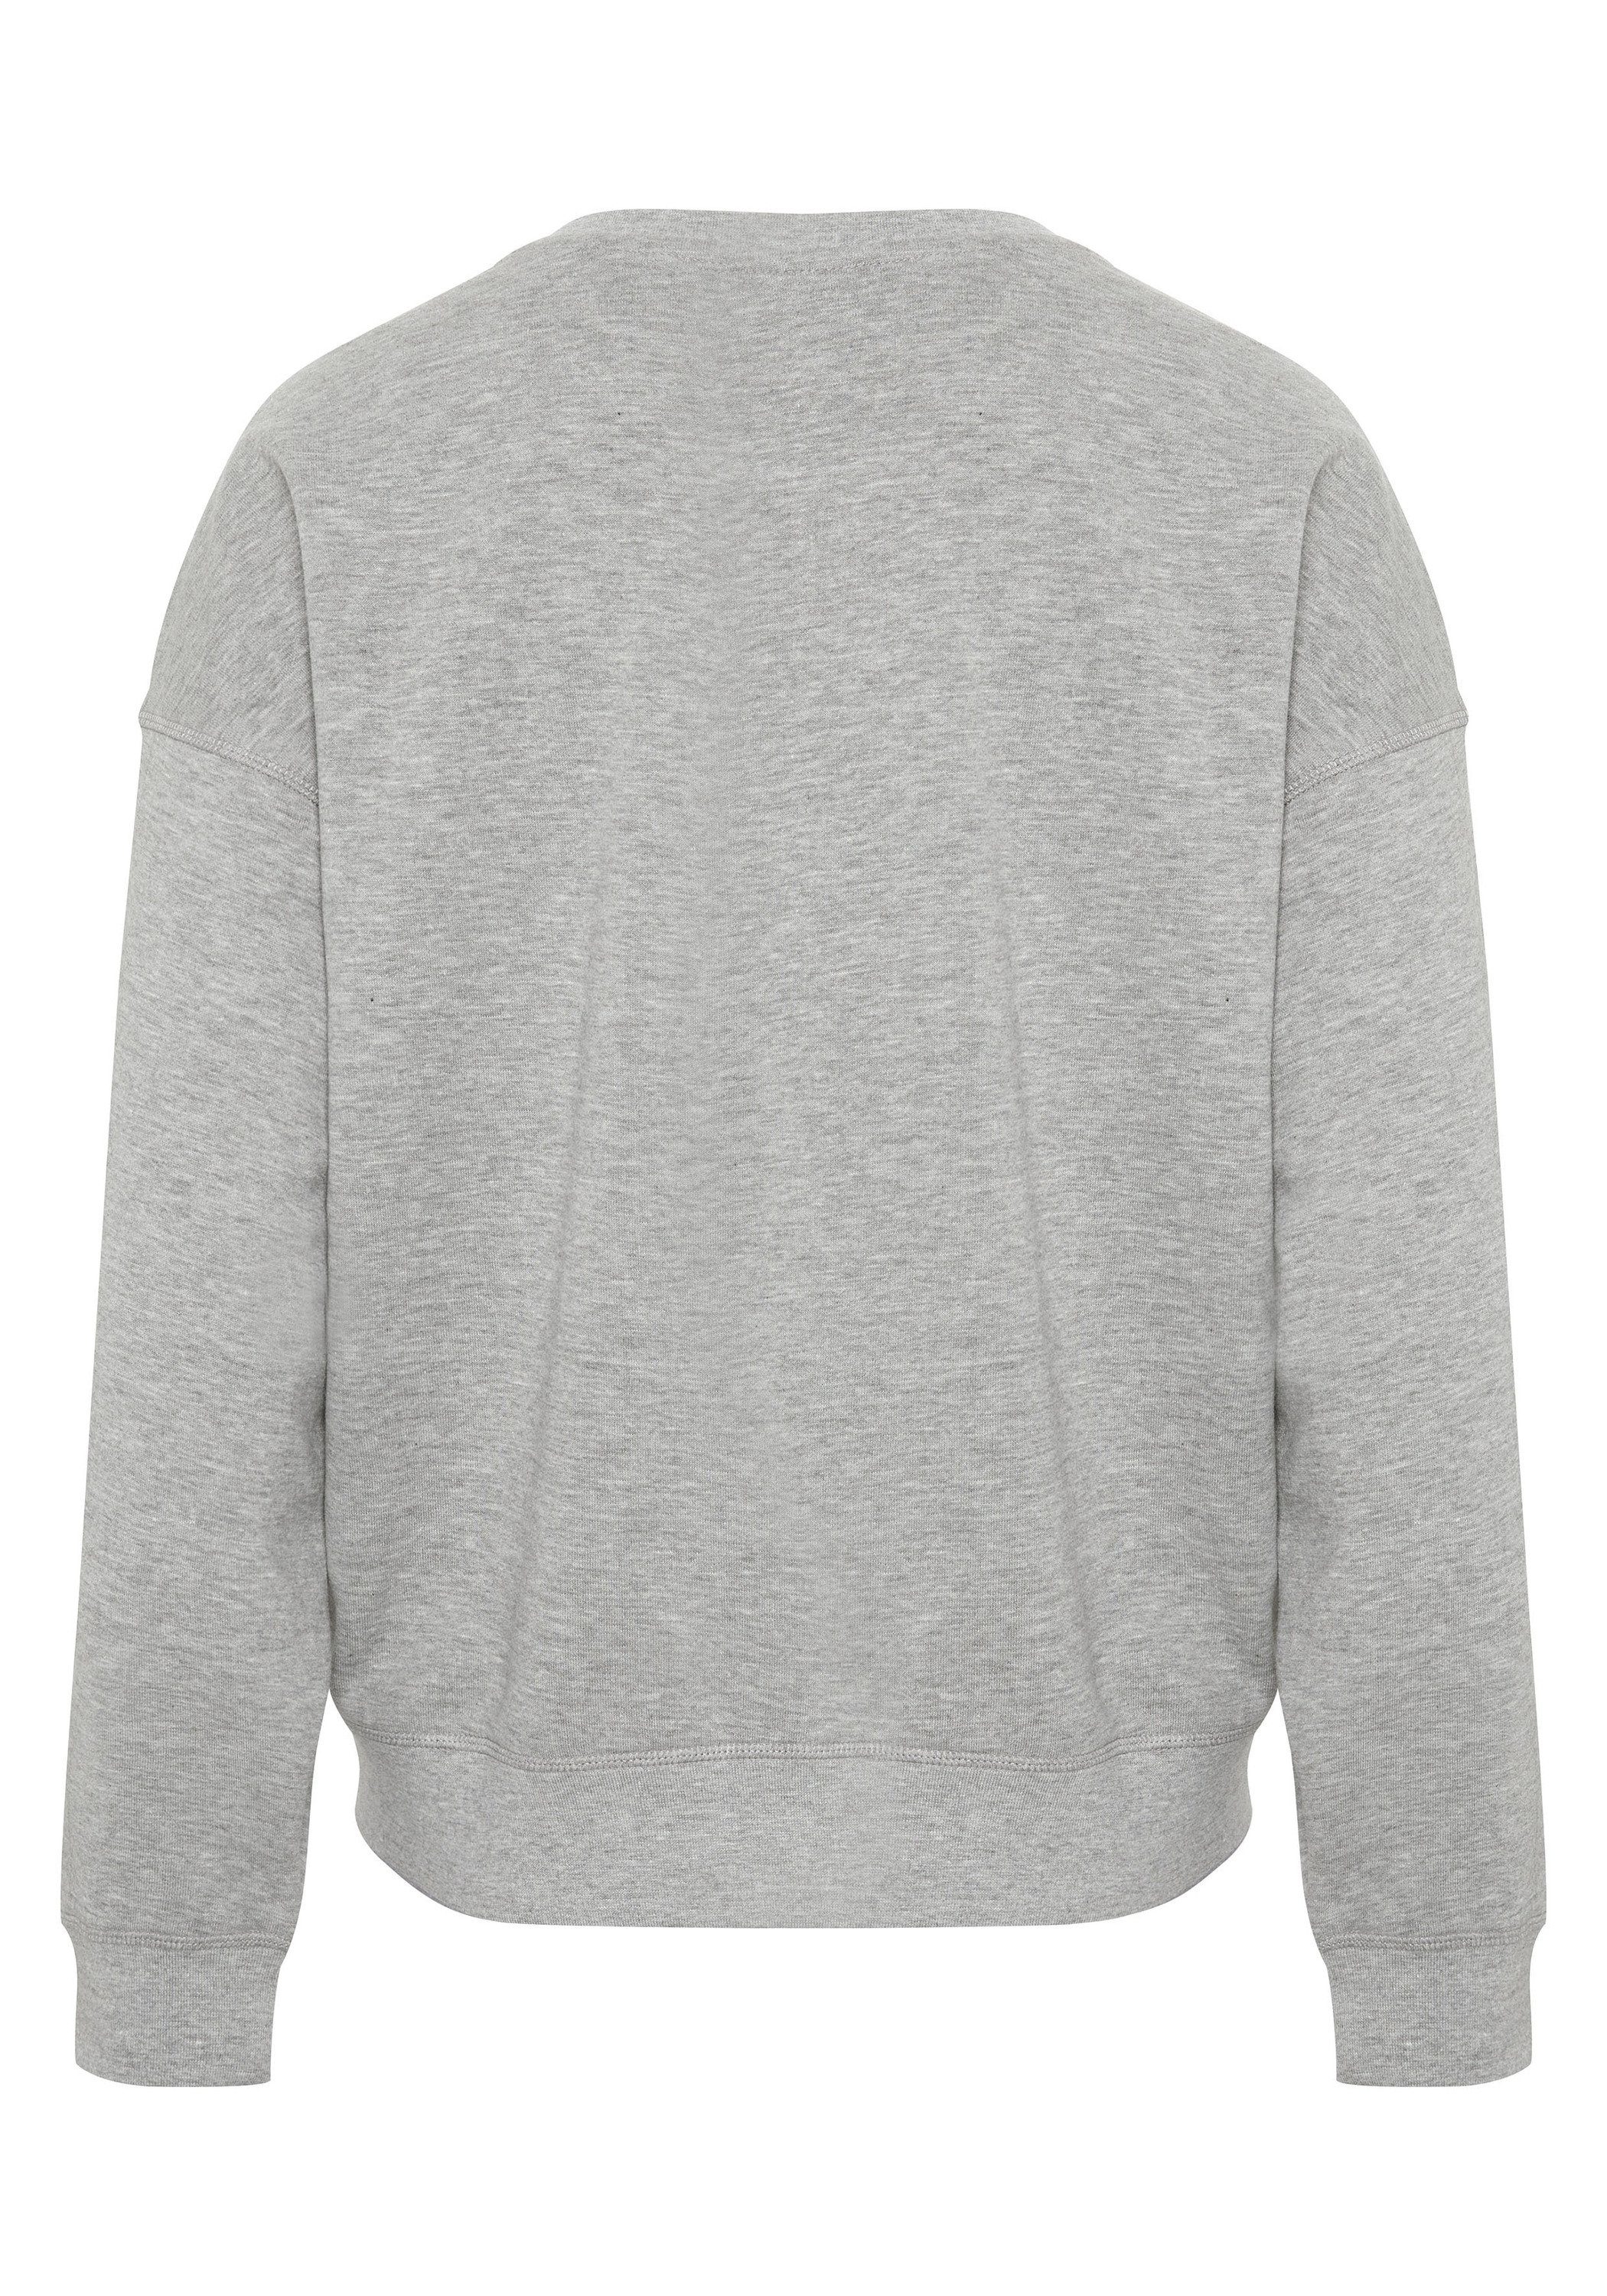 JETTE SPORT Gray 17-4402M Sweatshirt Melange Neutral im Label-Design